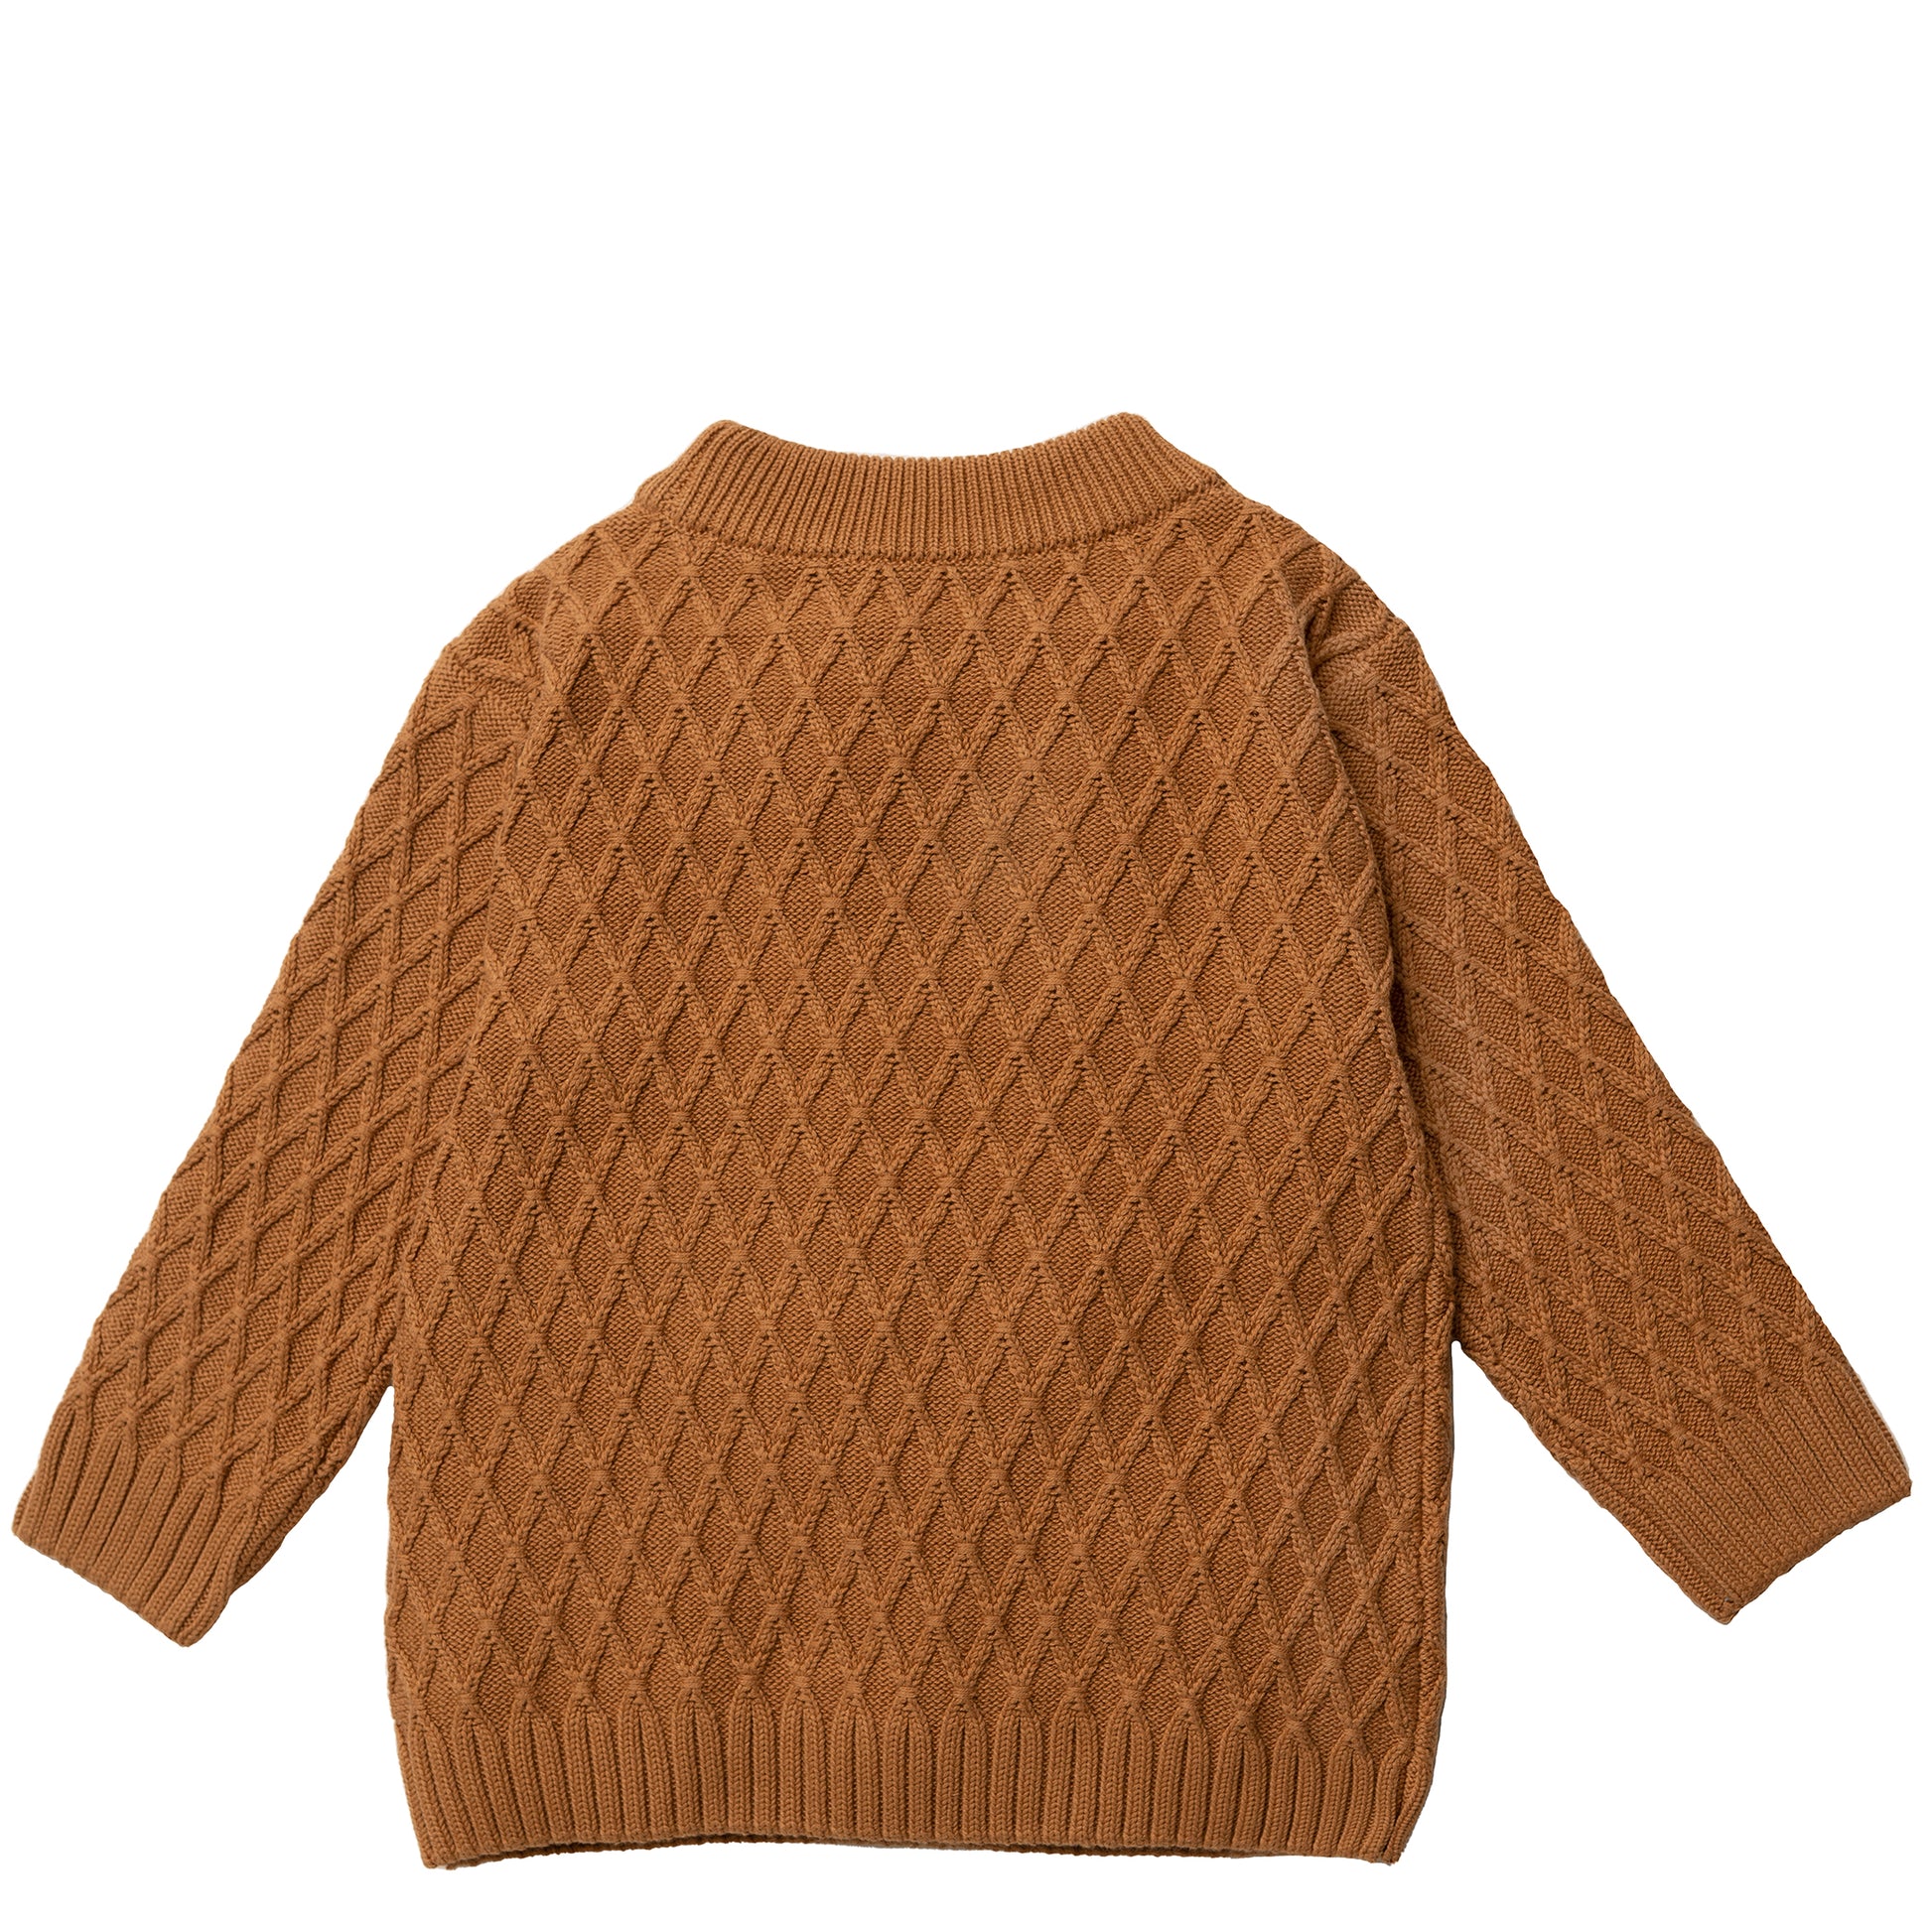 Hanevild Theodor blouse, cinnamon Blouses Golden brown